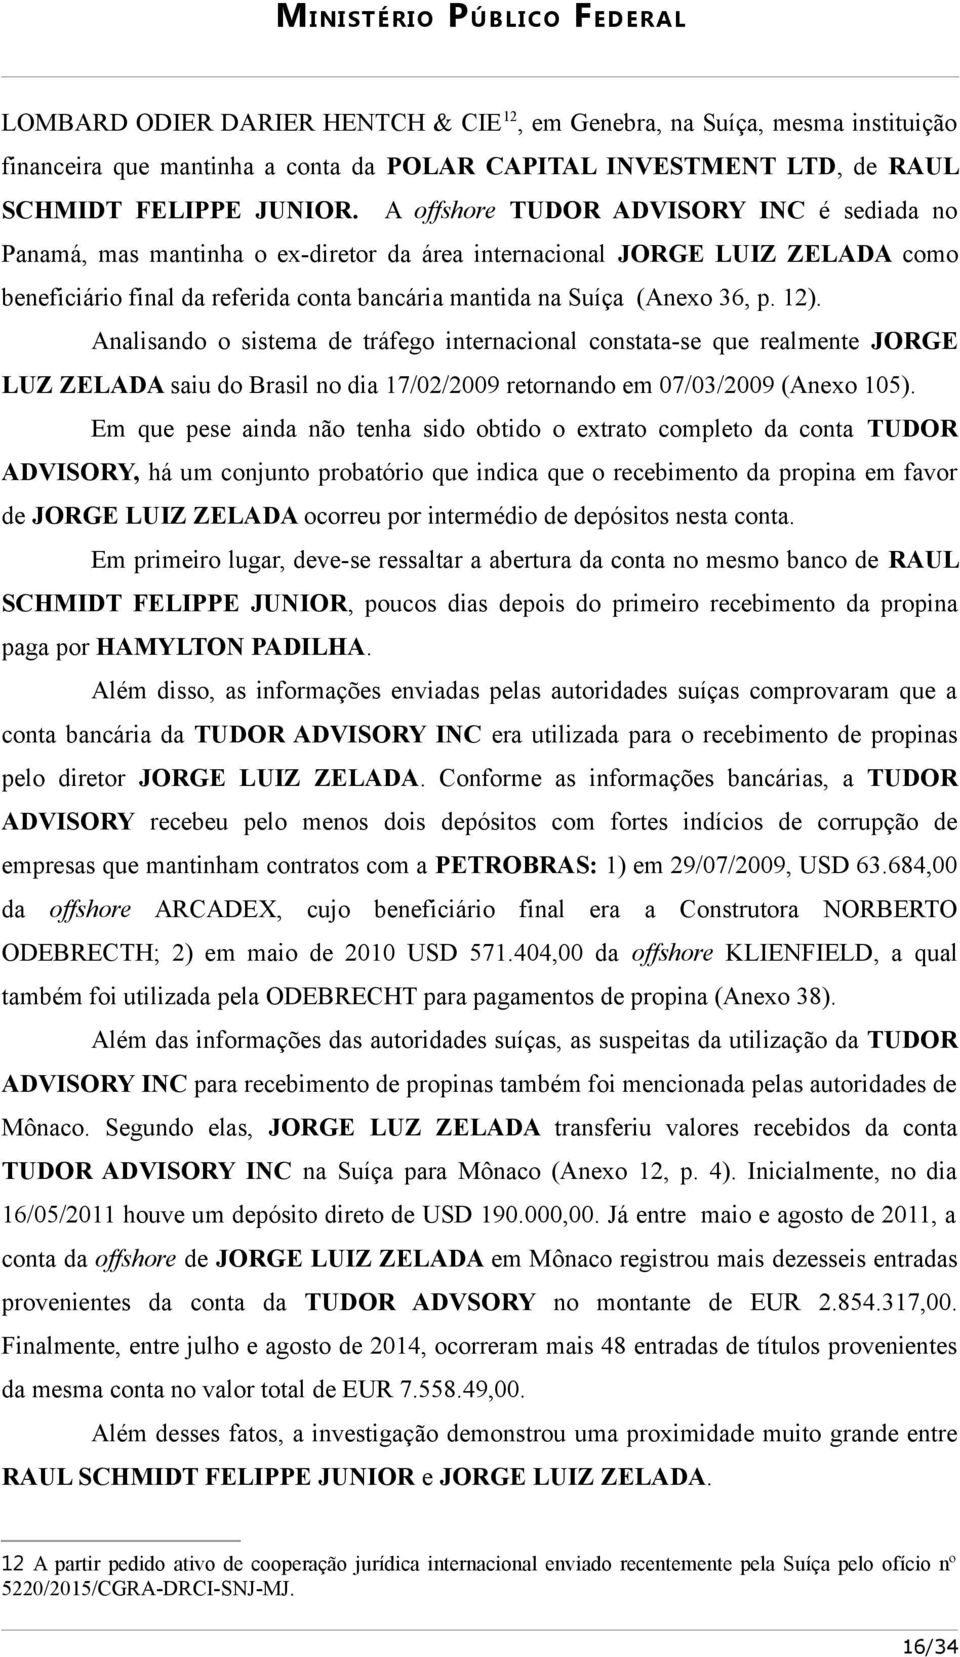 12). Analisando o sistema de tráfego internacional constata-se que realmente JORGE LUZ ZELADA saiu do Brasil no dia 17/02/2009 retornando em 07/03/2009 (Anexo 105).